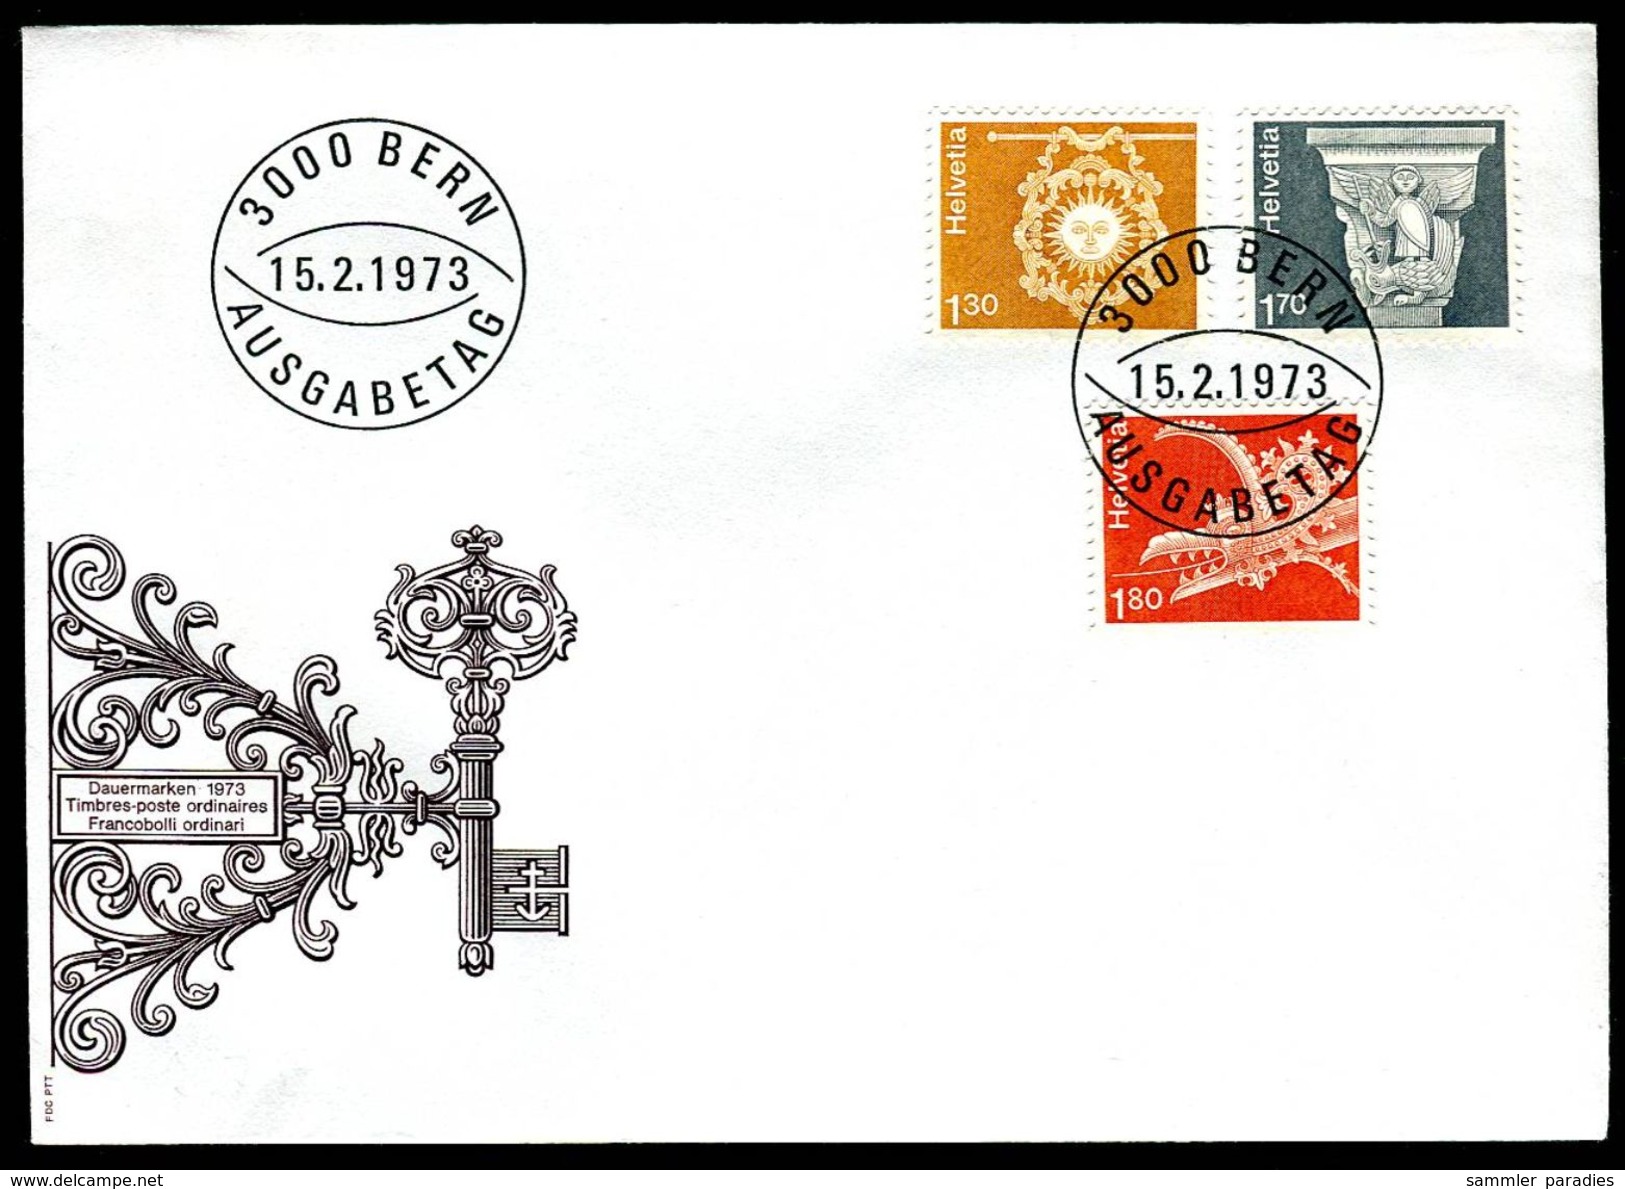 01377c) Schweiz - FDC - Michel 991 / 993 - Zumstein-Nummer 537, 539 / 540 Freimarken 1973 - FDC